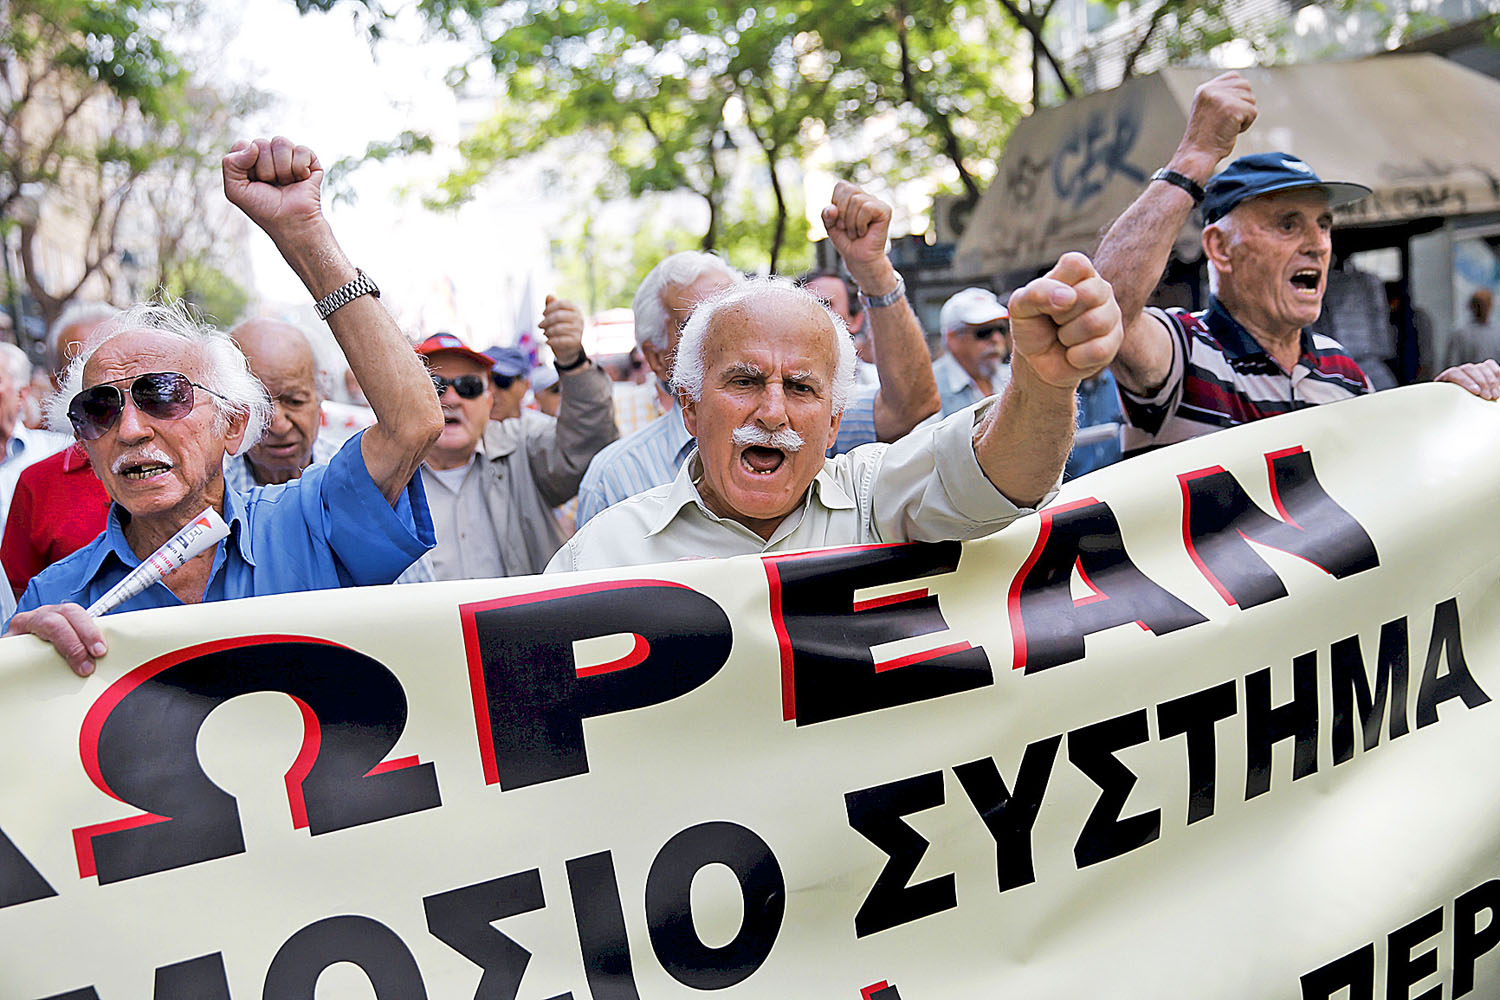 Dühös nyugdíjasok tiltakoztak május végén a görög fővárosban